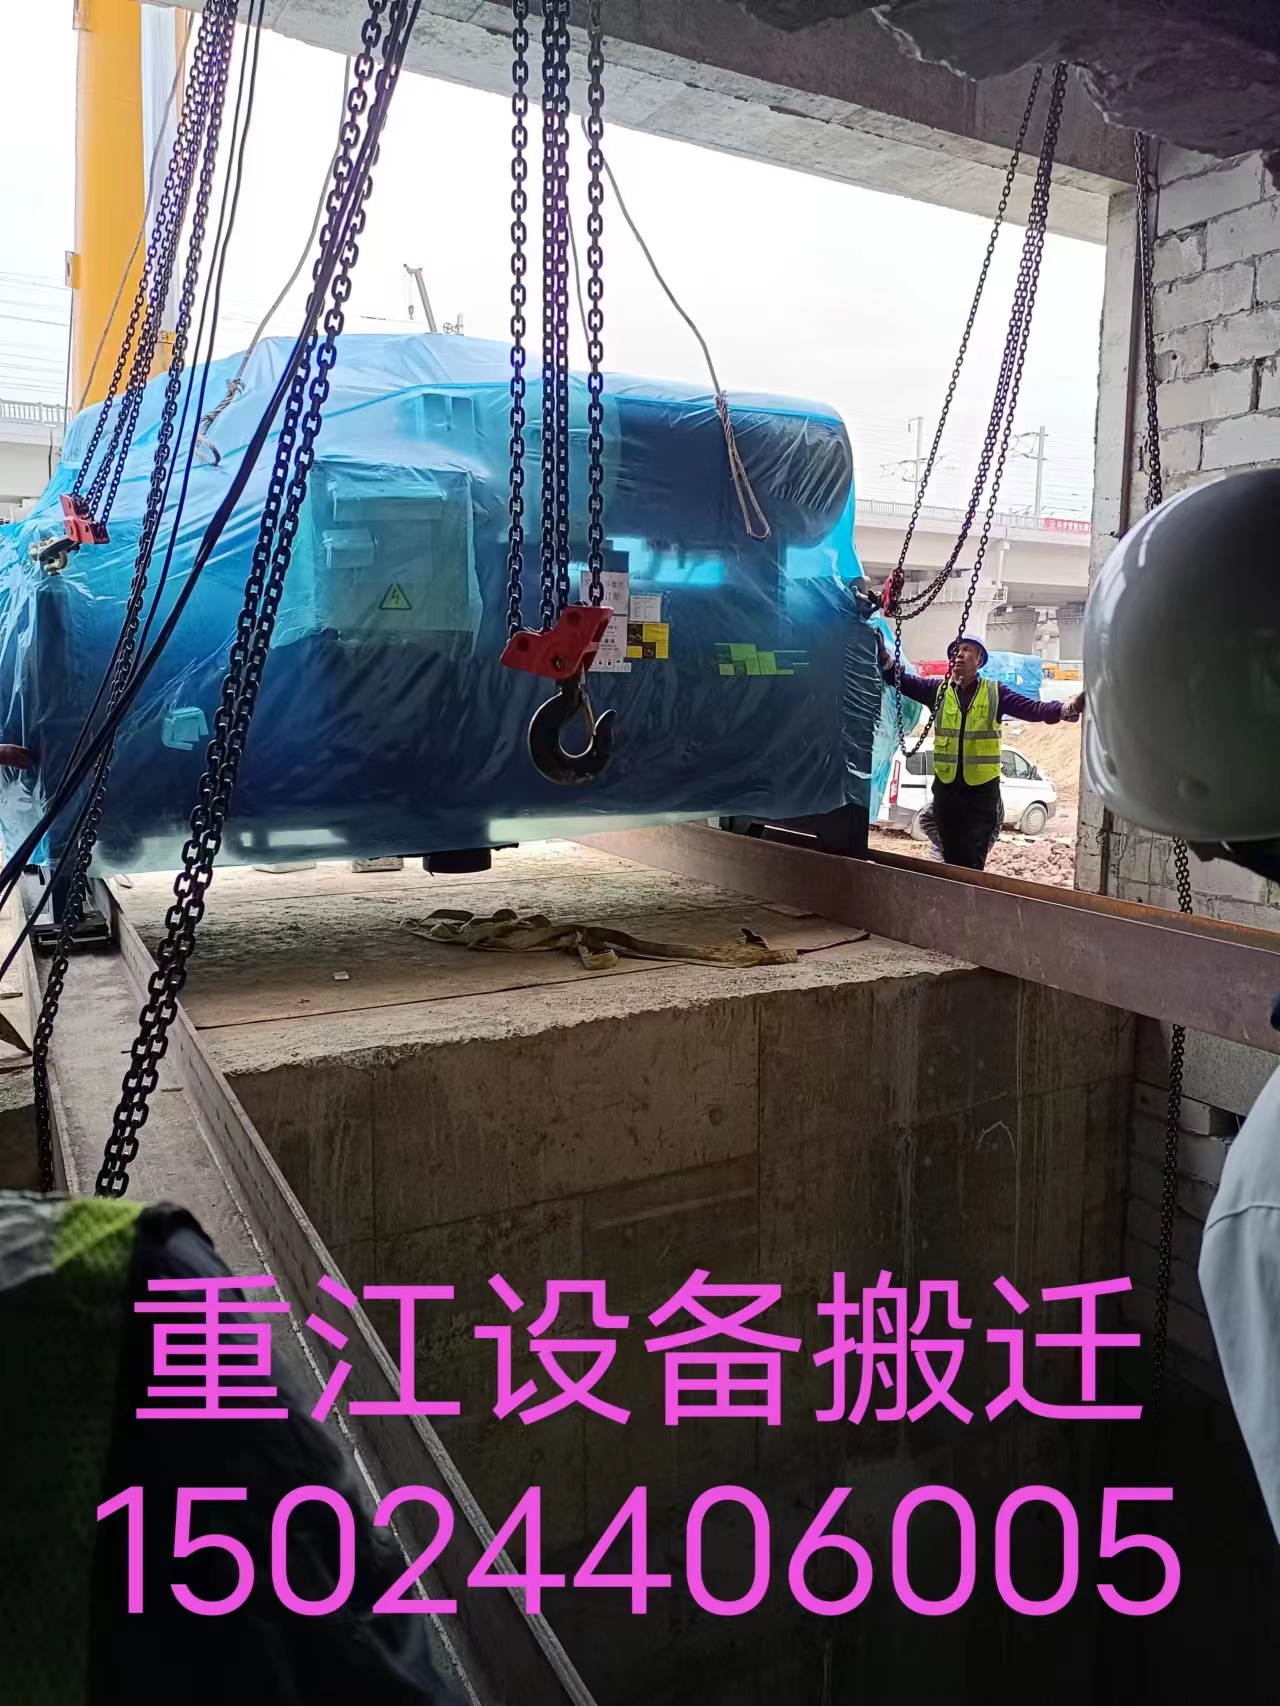 闲林设备搬运公司  超大笨重机器设备搬迁搬厂 重江服务